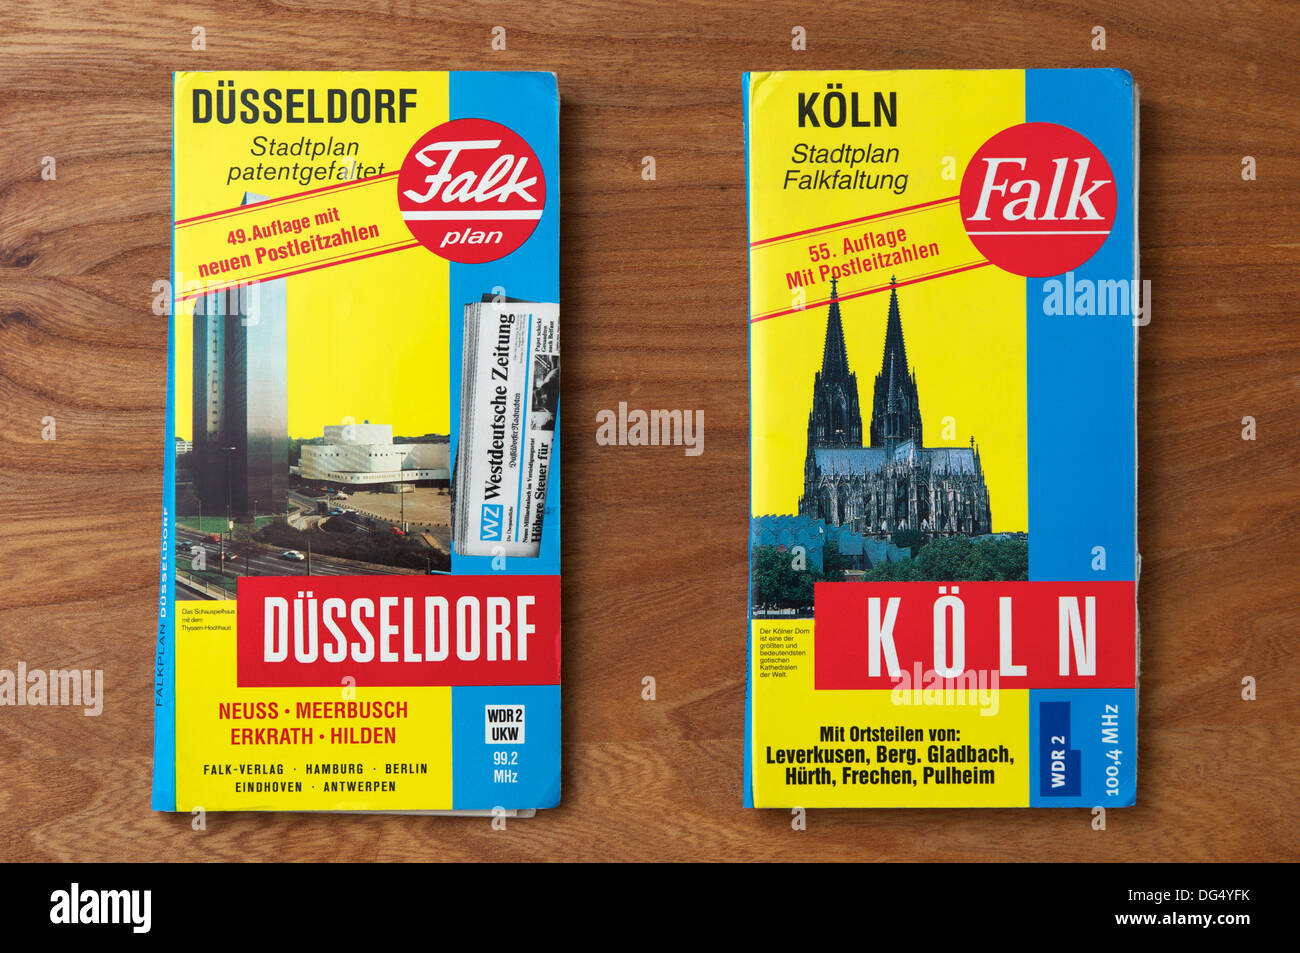 Falk Dusseldorf e Colonia mappe stradali Foto Stock